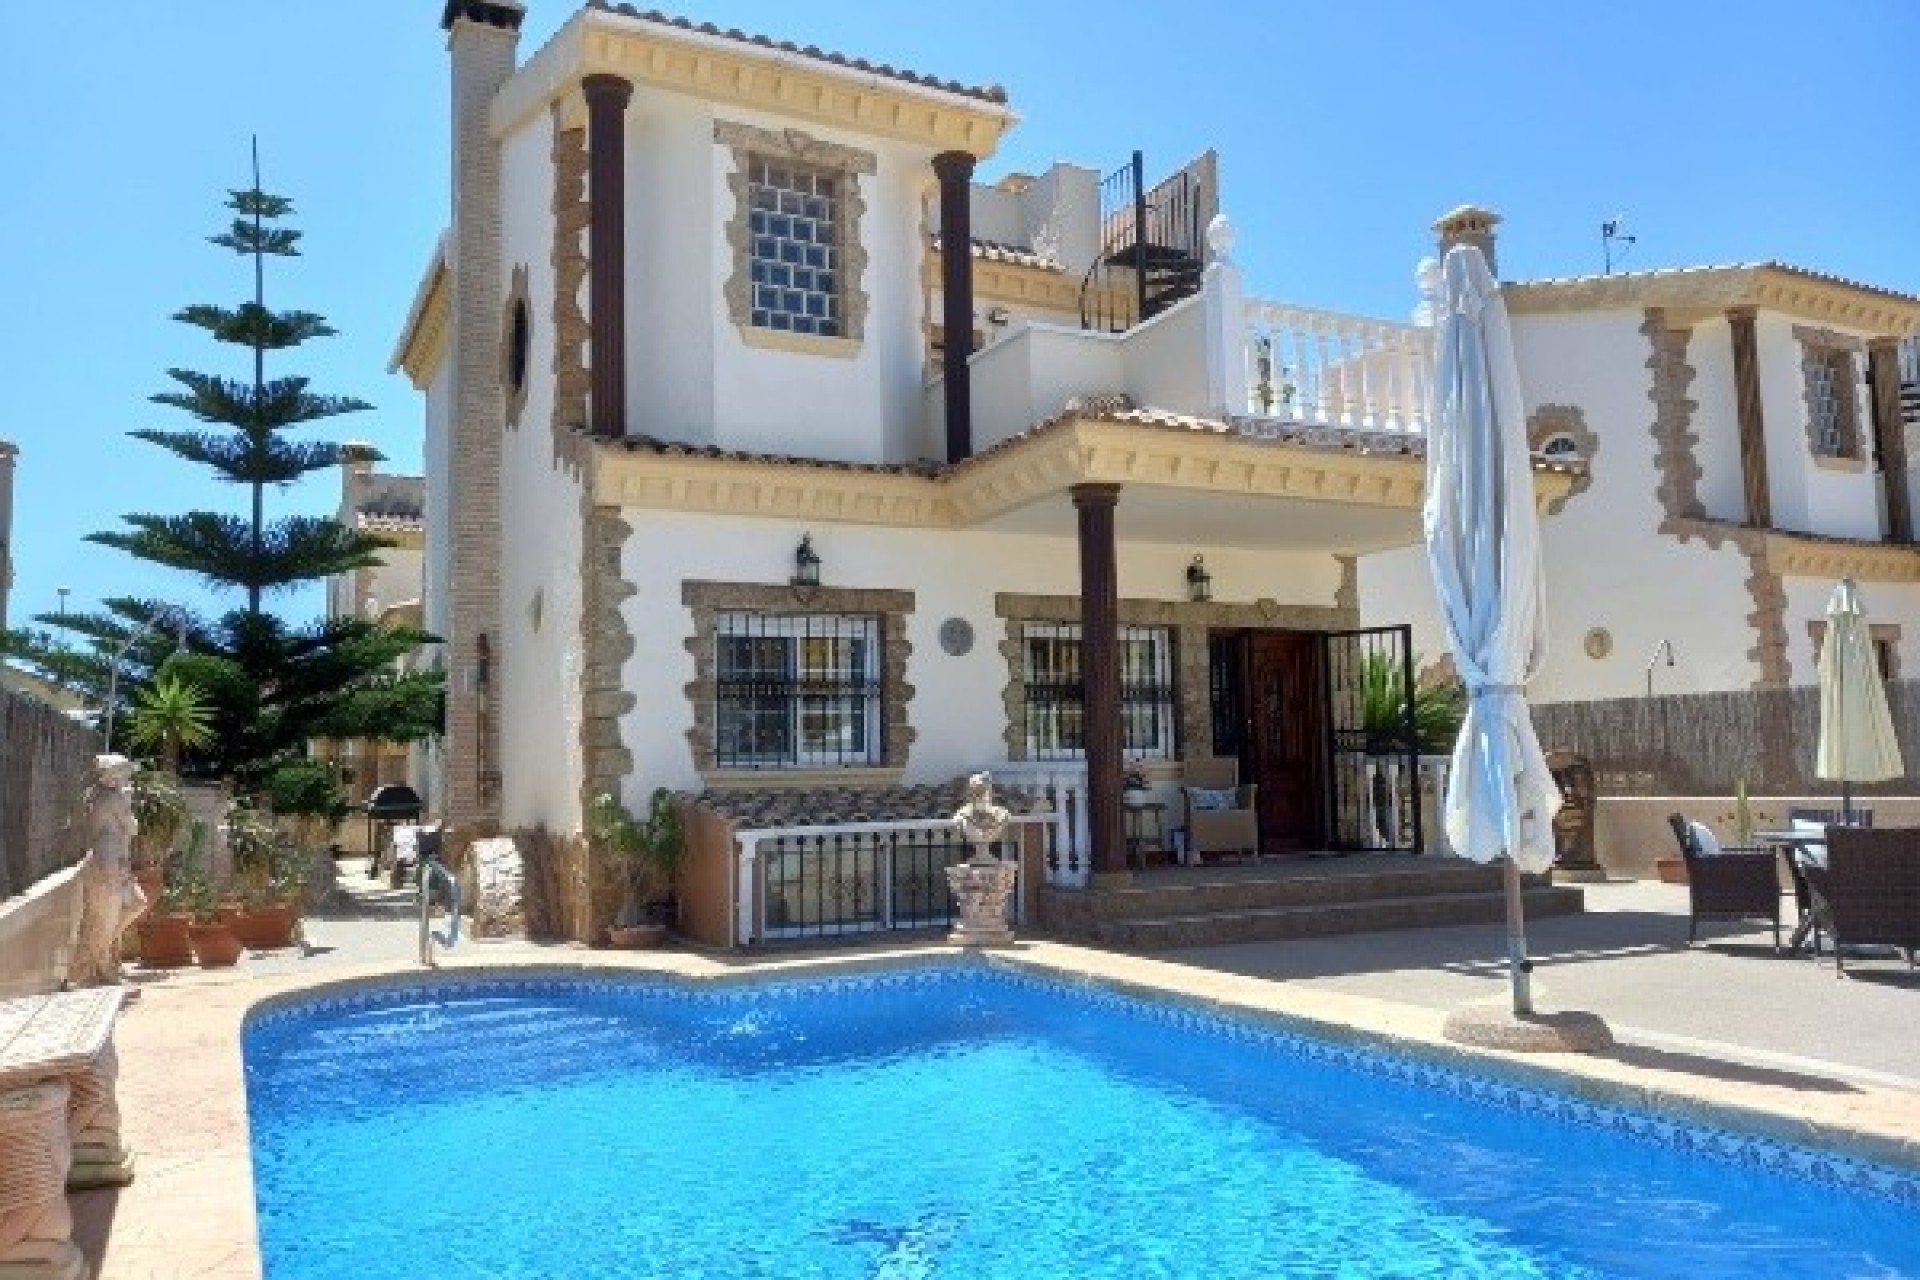 4 bedroom house / villa for sale in El Raso, Costa Blanca